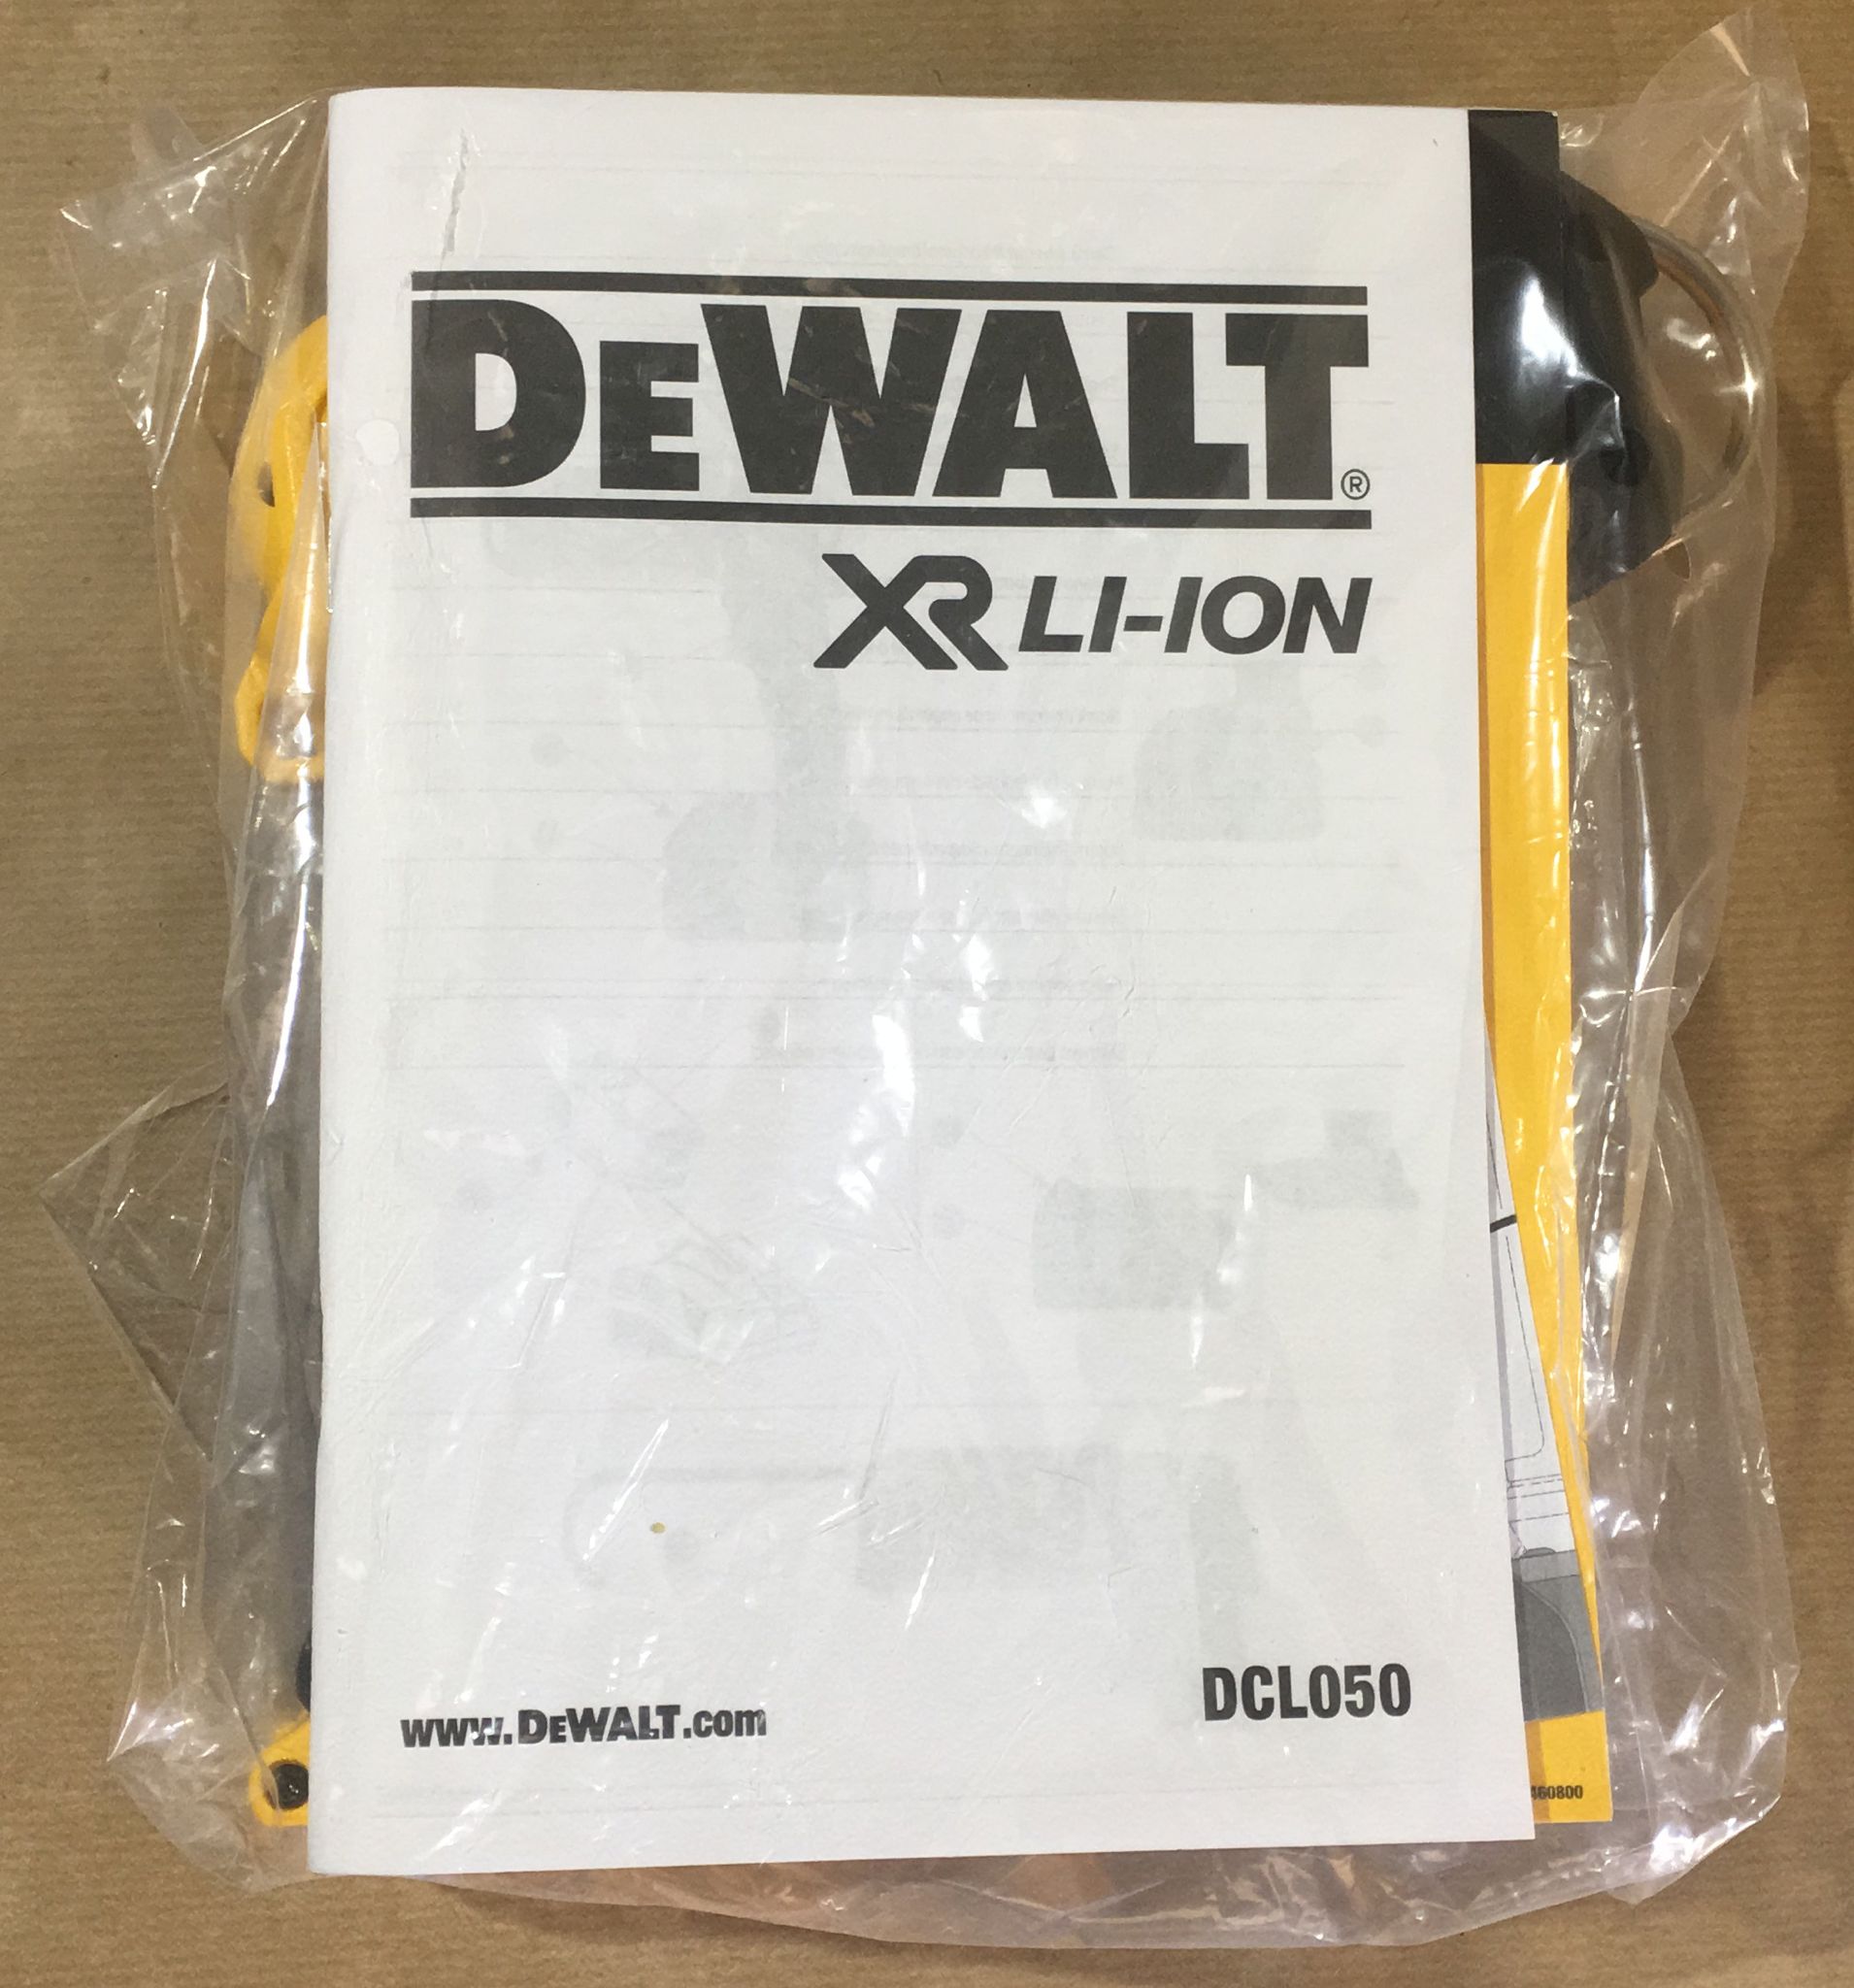 Dewalt DCL050 18v Cordless XR Handheld LED Work Light Without Battery or Charger